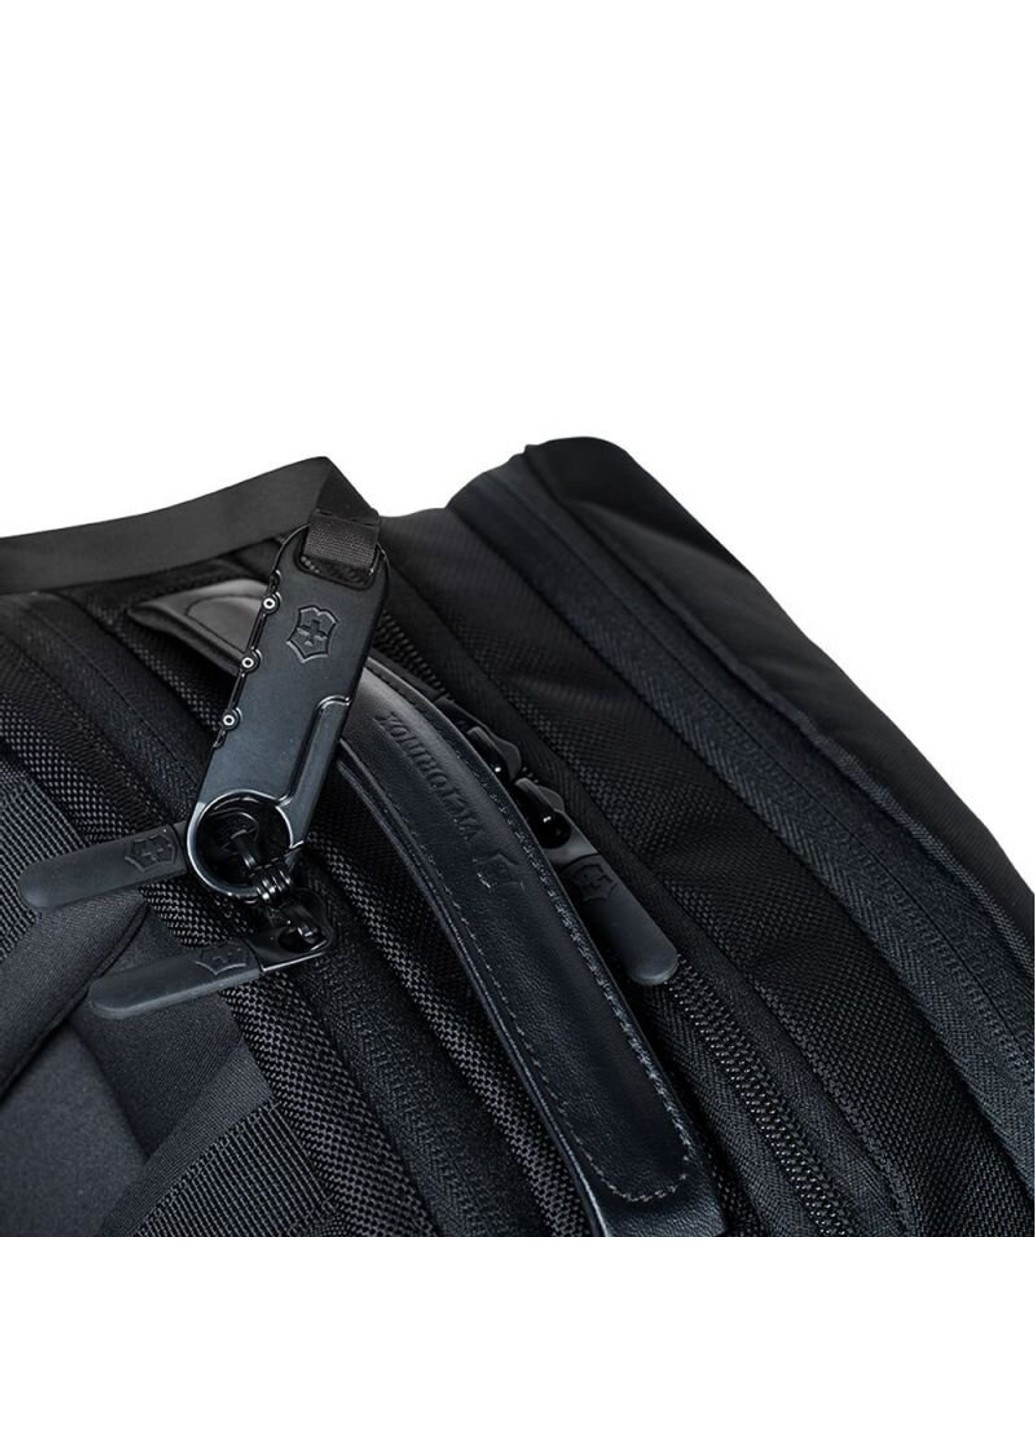 Черный рюкзак ALTMONT Professional/Black Vt602155 Victorinox Travel (262449710)